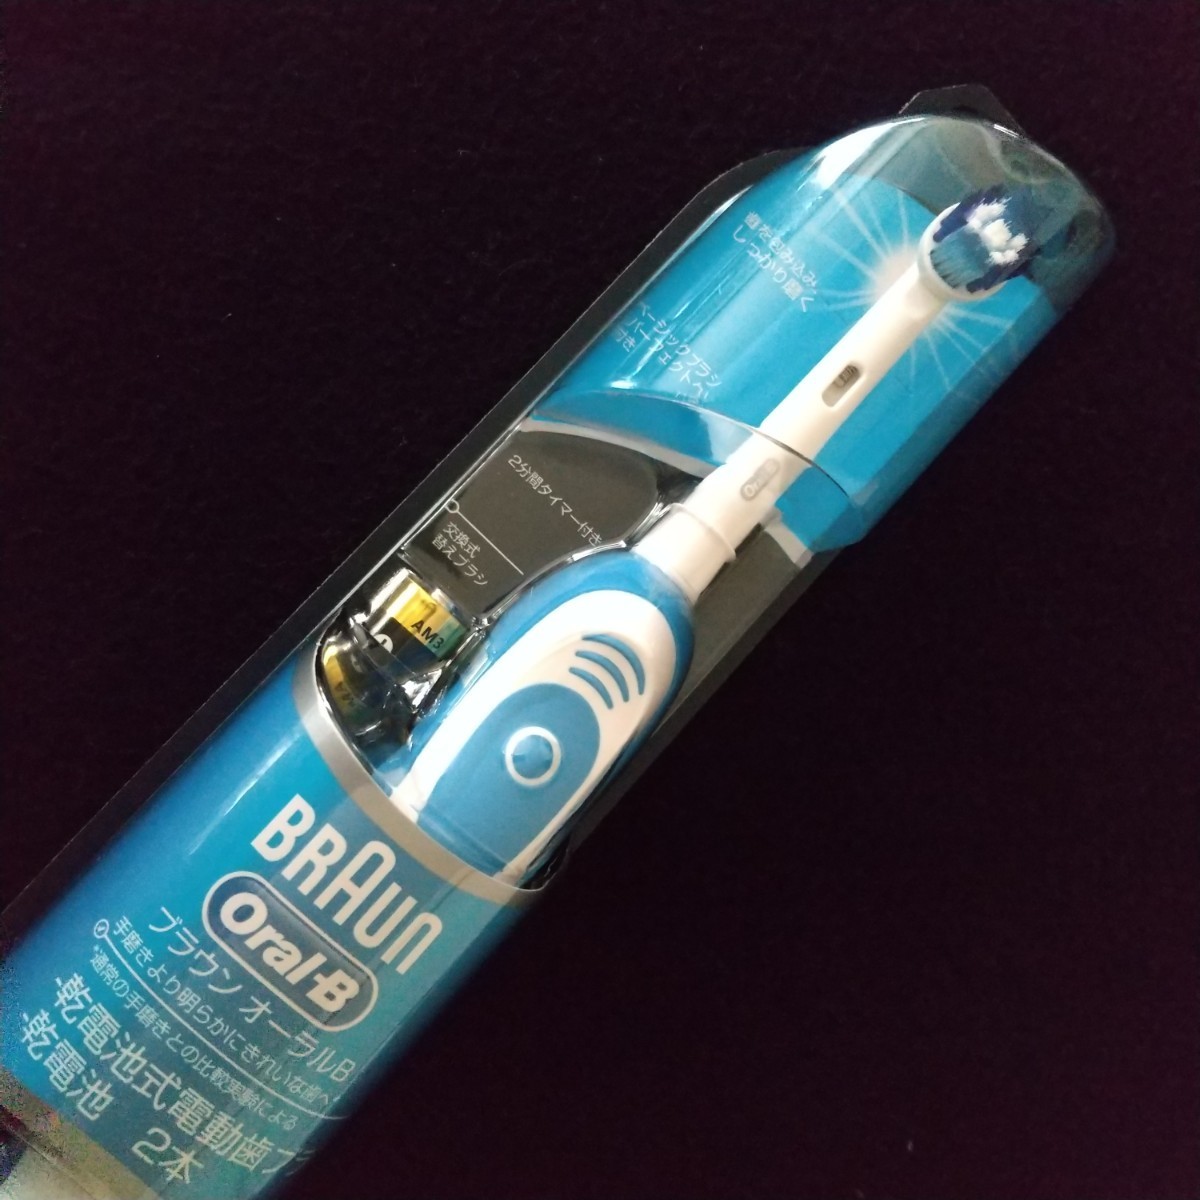 ブラウンBRAUN Orai-B　電動歯ブラシ